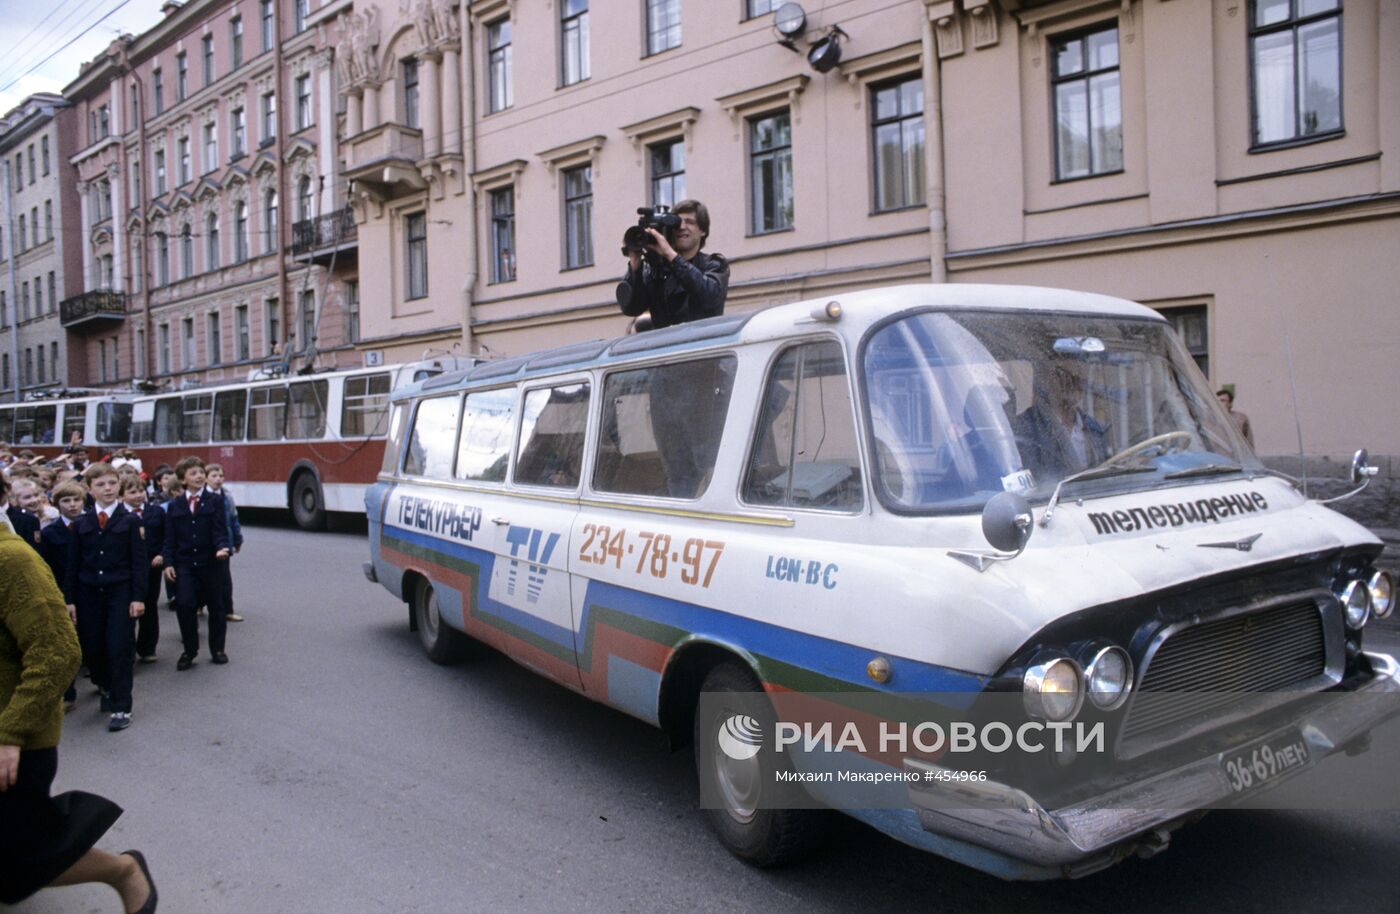 Телевизионная съемка на улице Ленинграда